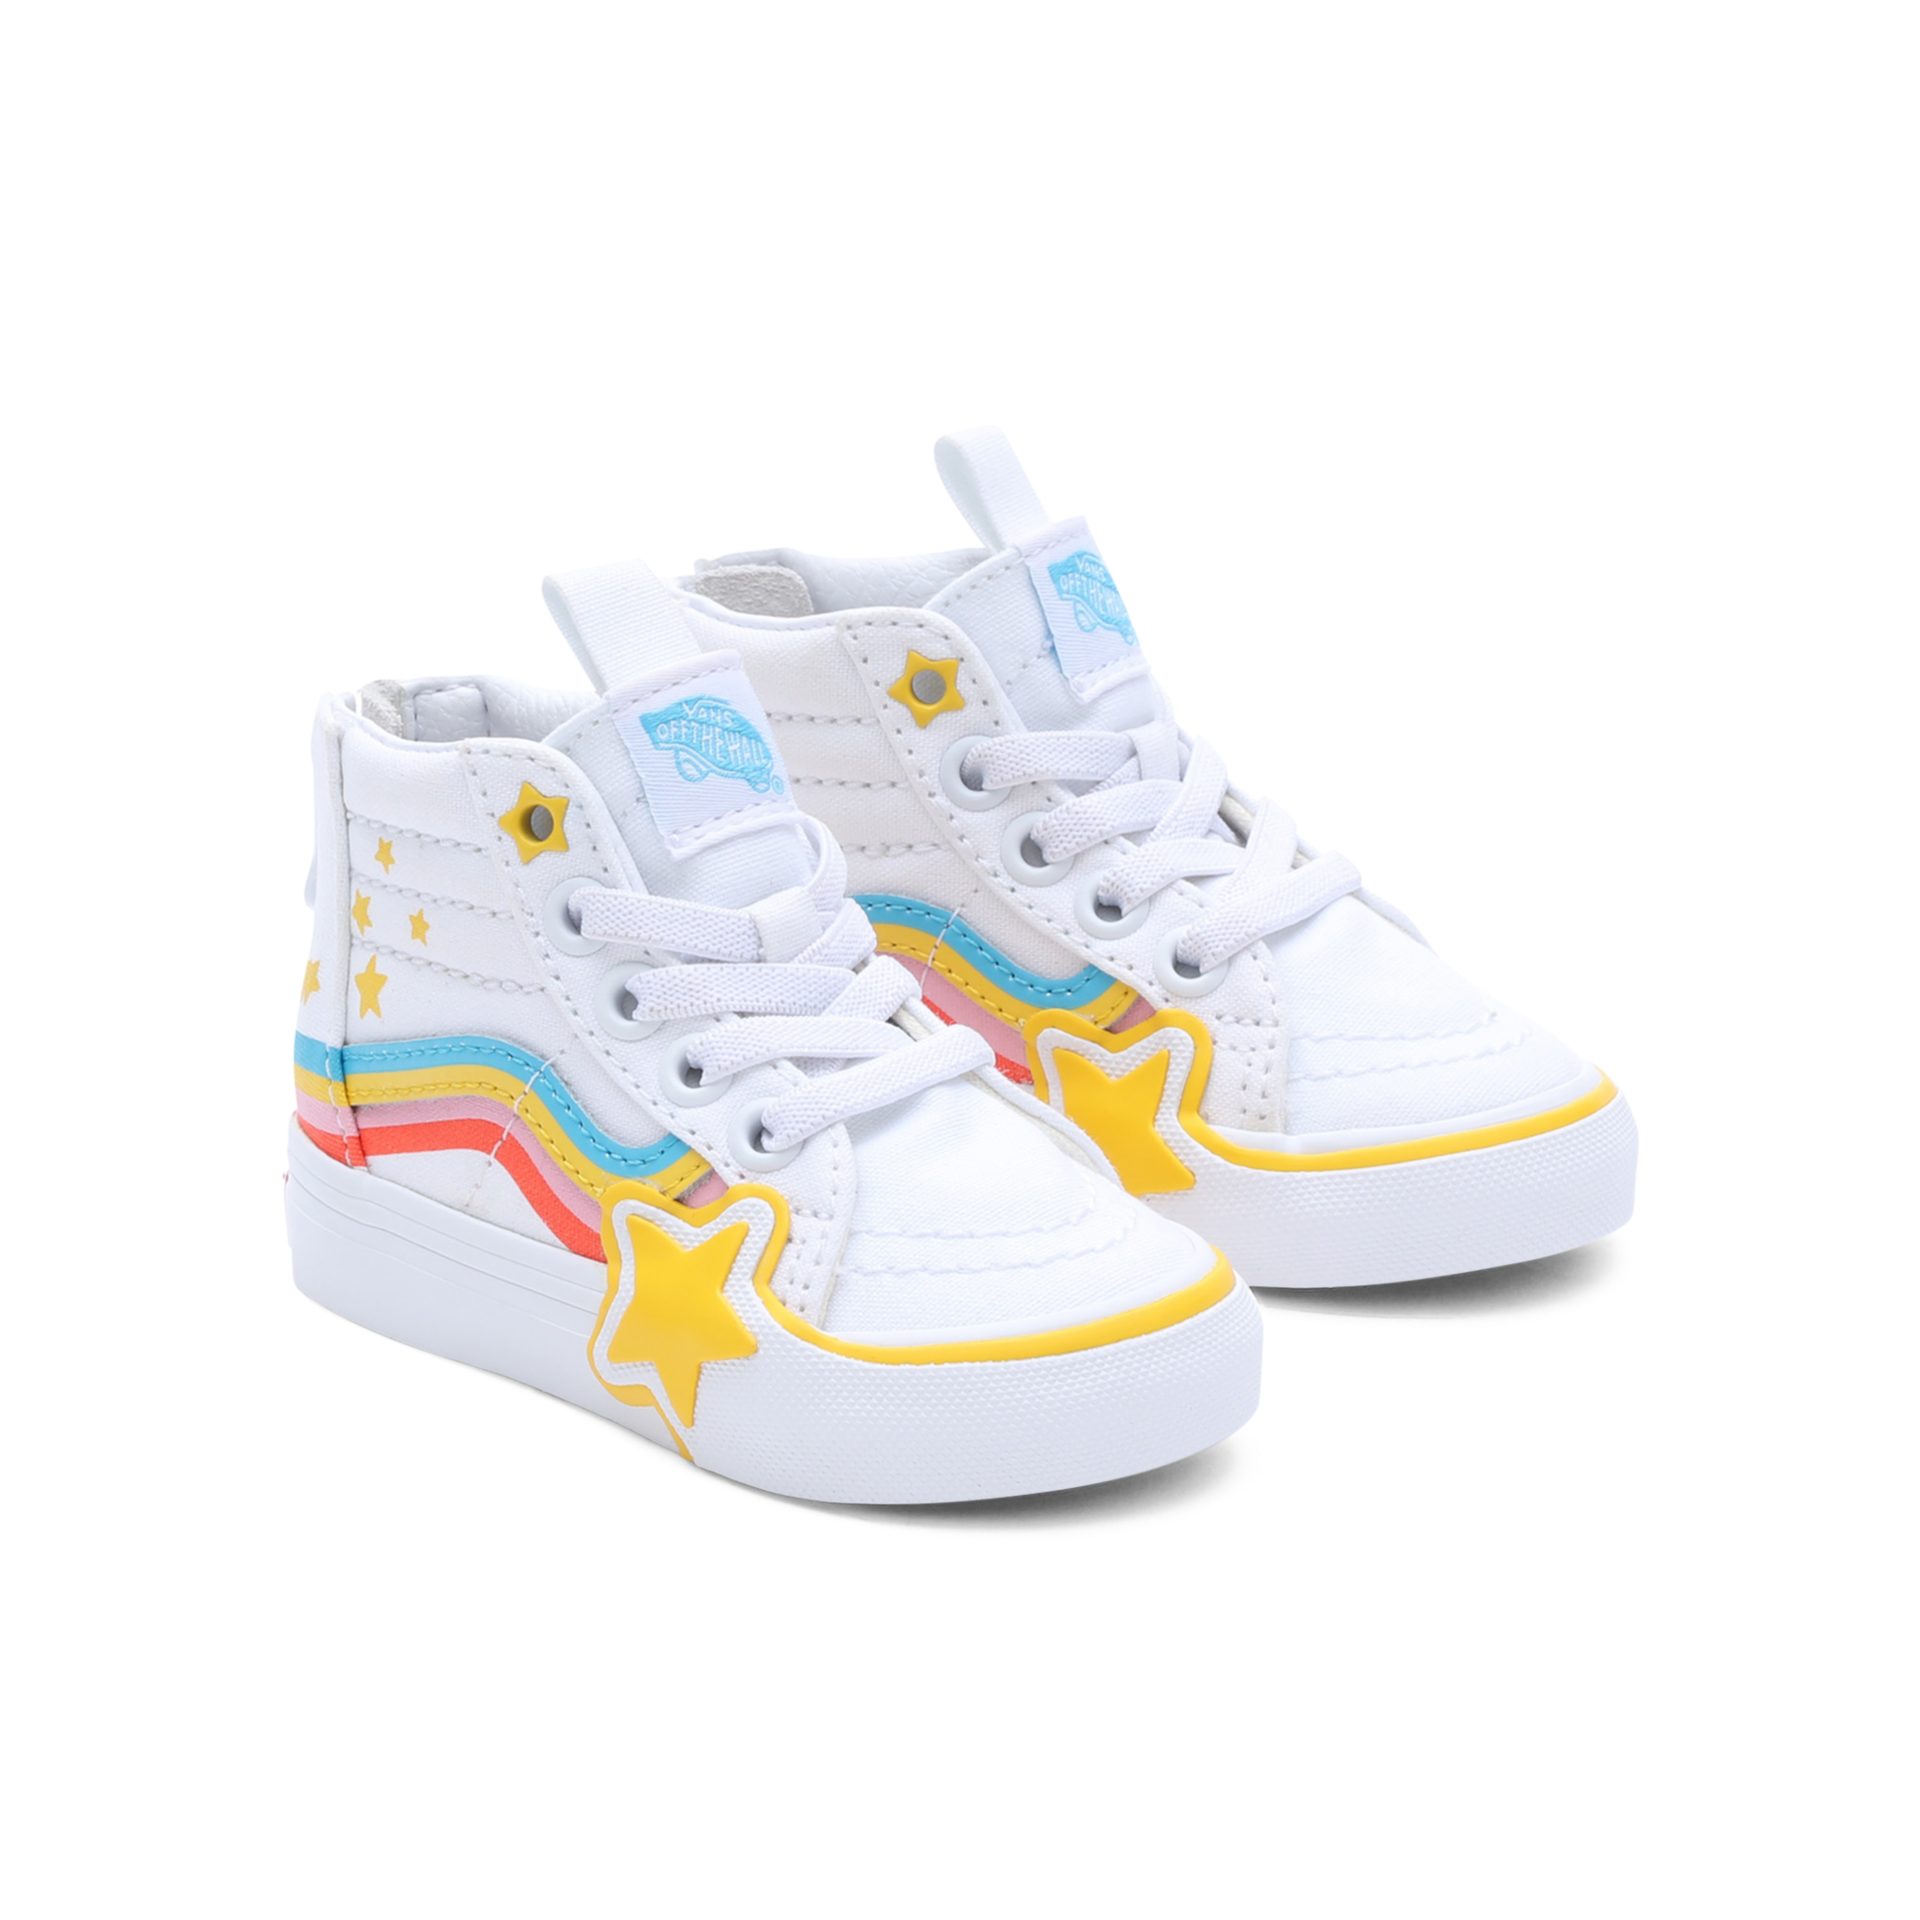 Vans SK8-Hi Zip Rainbow Star Sneaker mit auffälligem Rainbow Star Design | Sneaker high